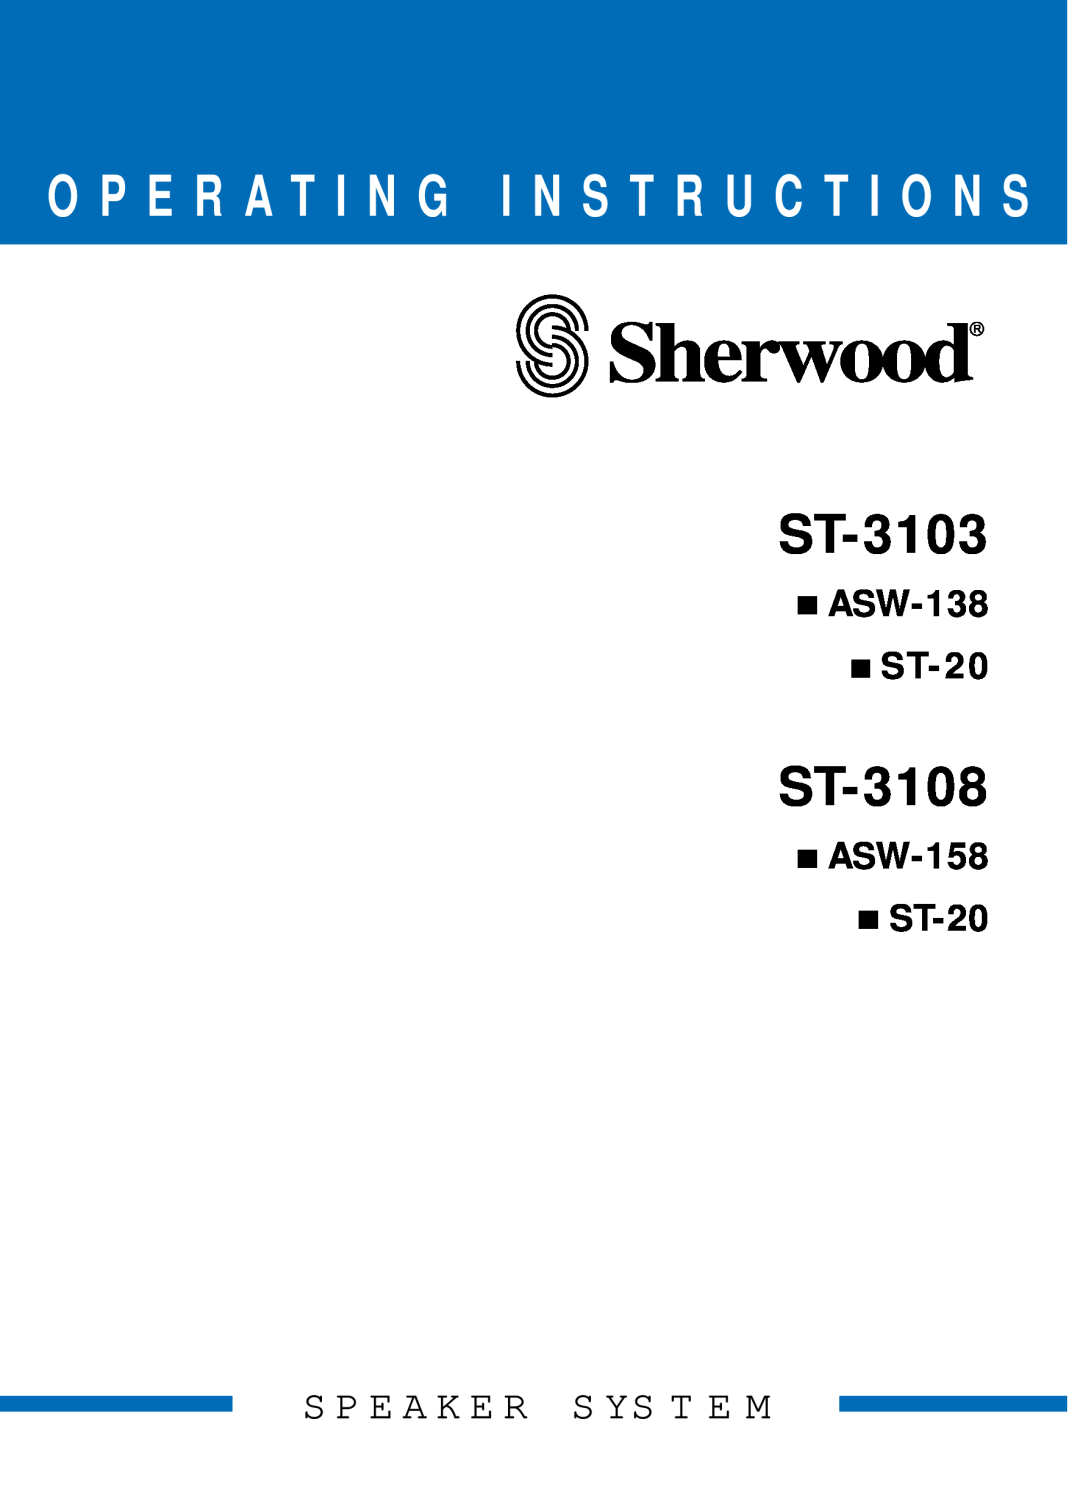 Sherwood ST-3103 manual ST-3108, O P E R A T I N G I N S T R U C T I O N S, ASW-138 ST-20, ASW-158 ST-20 